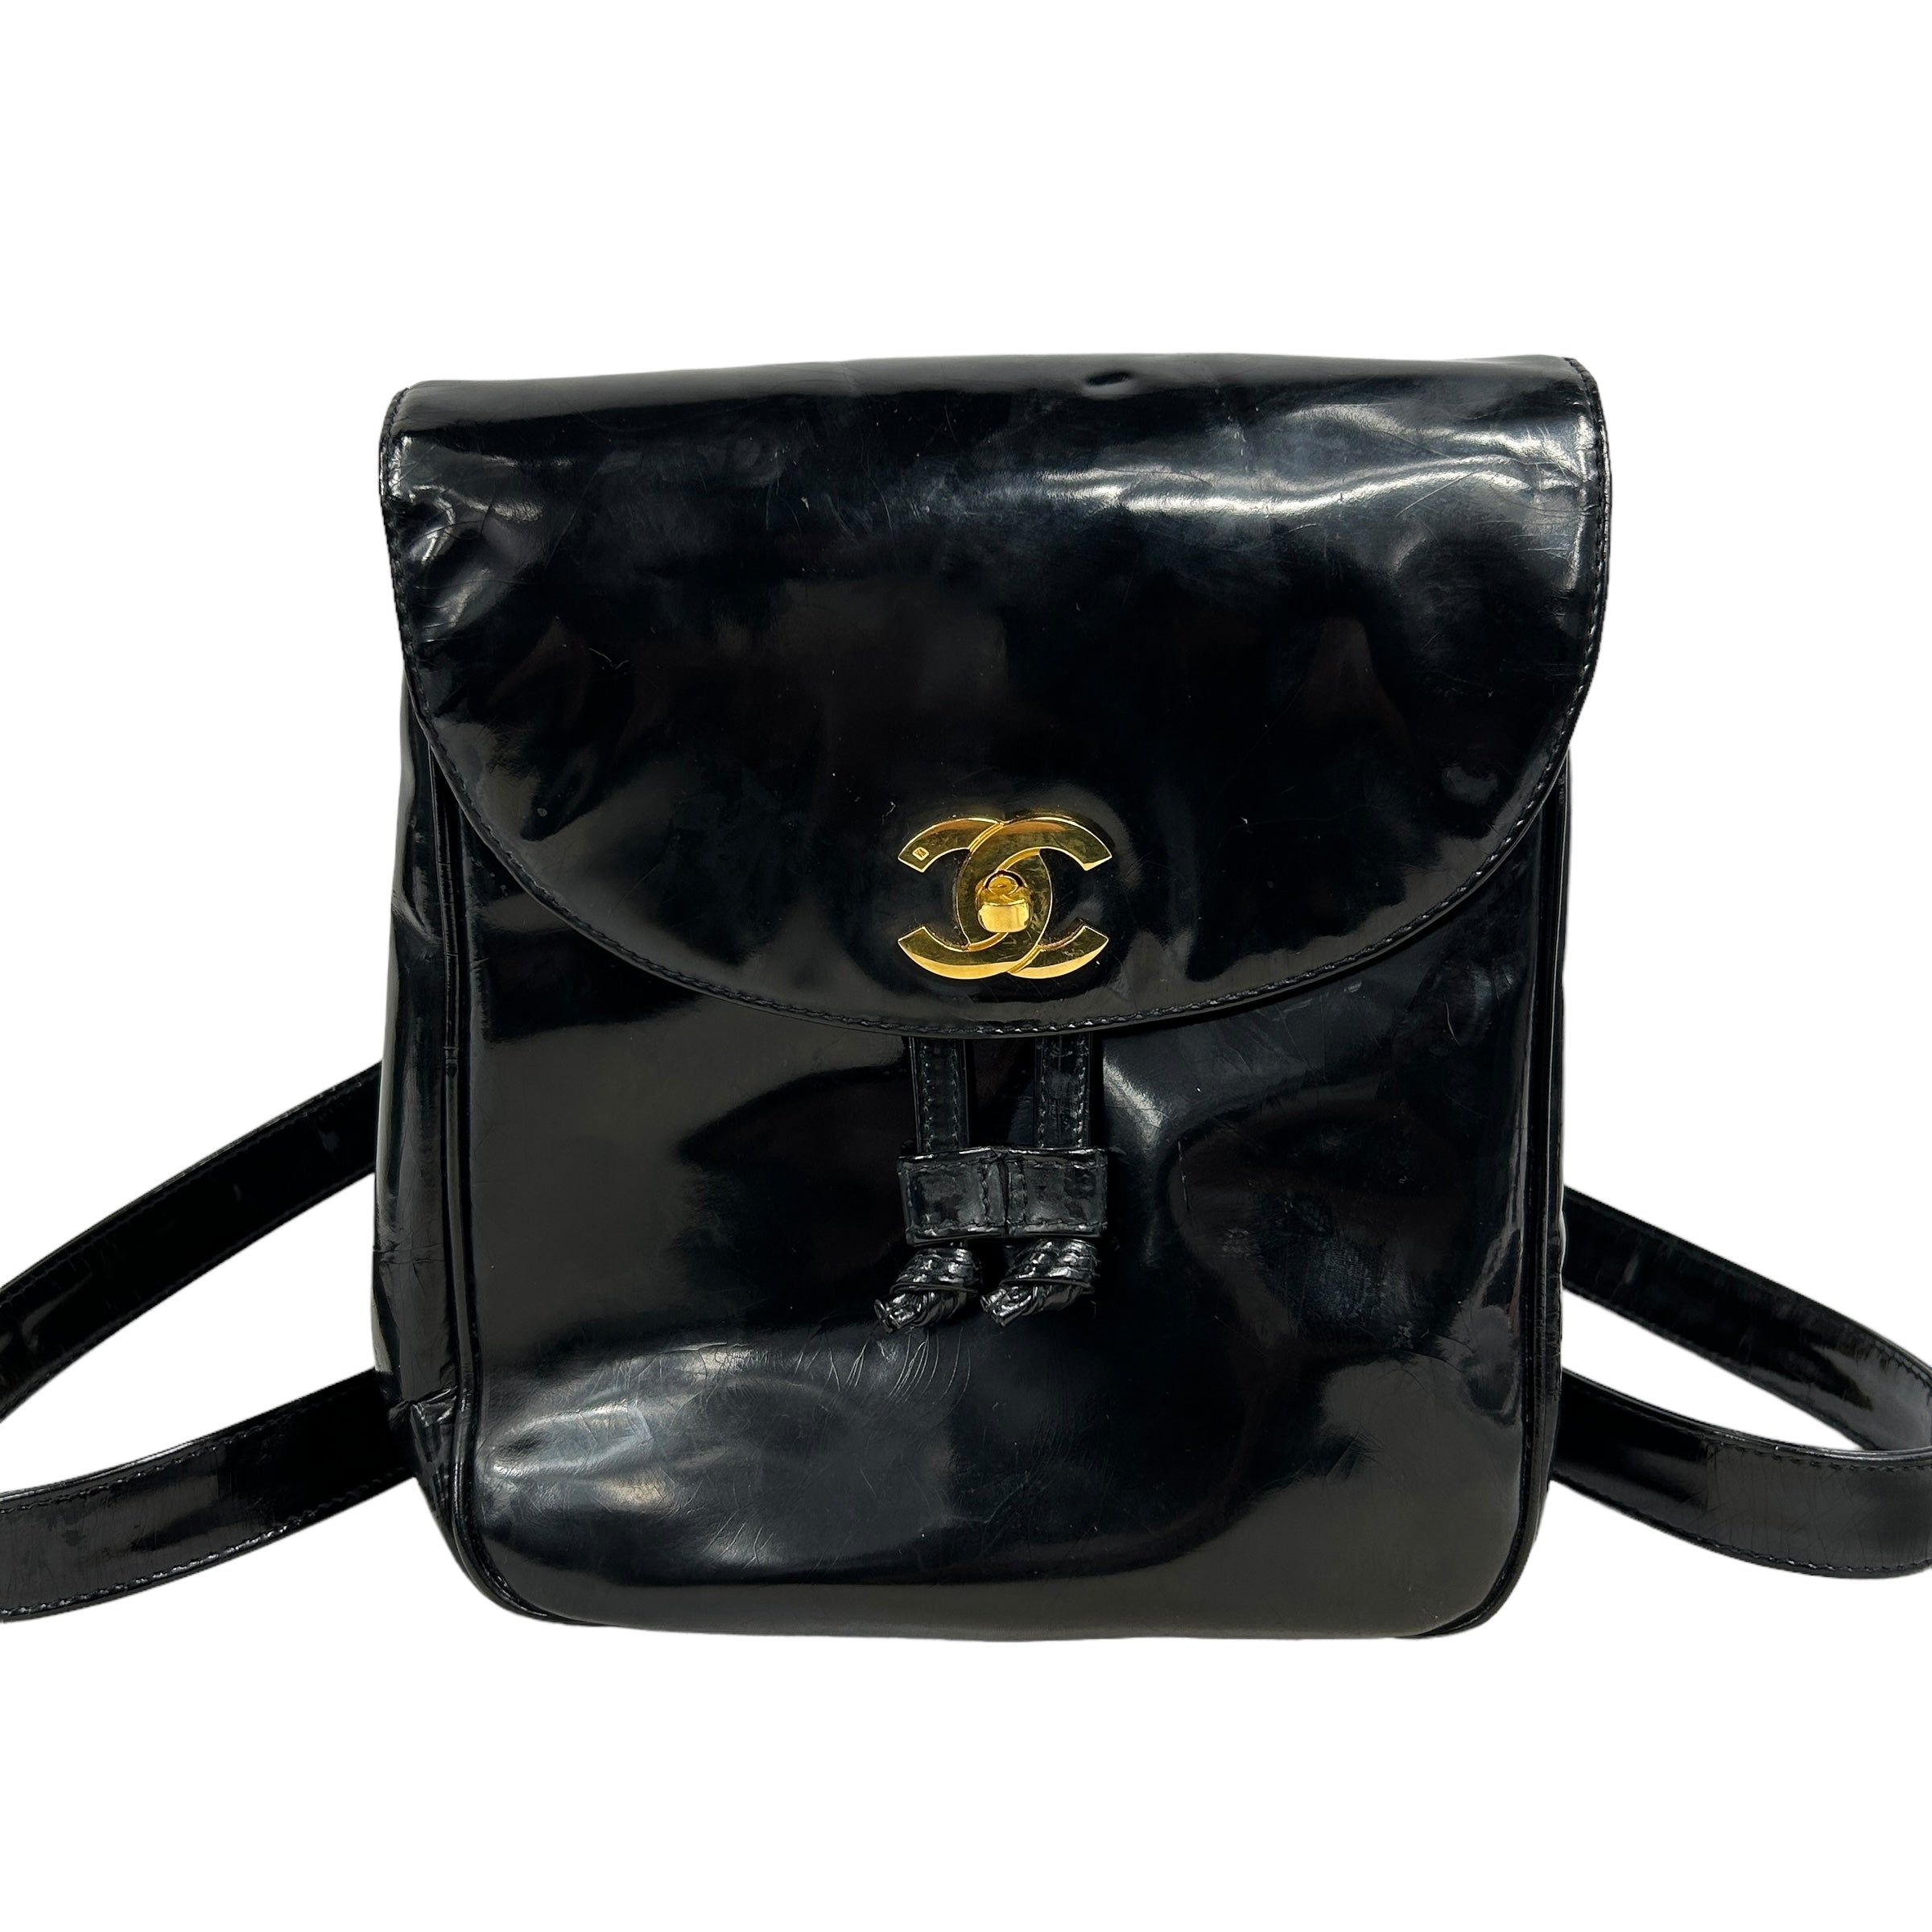 Black Patent Vintage Leather Backpack w/ 24K GHW